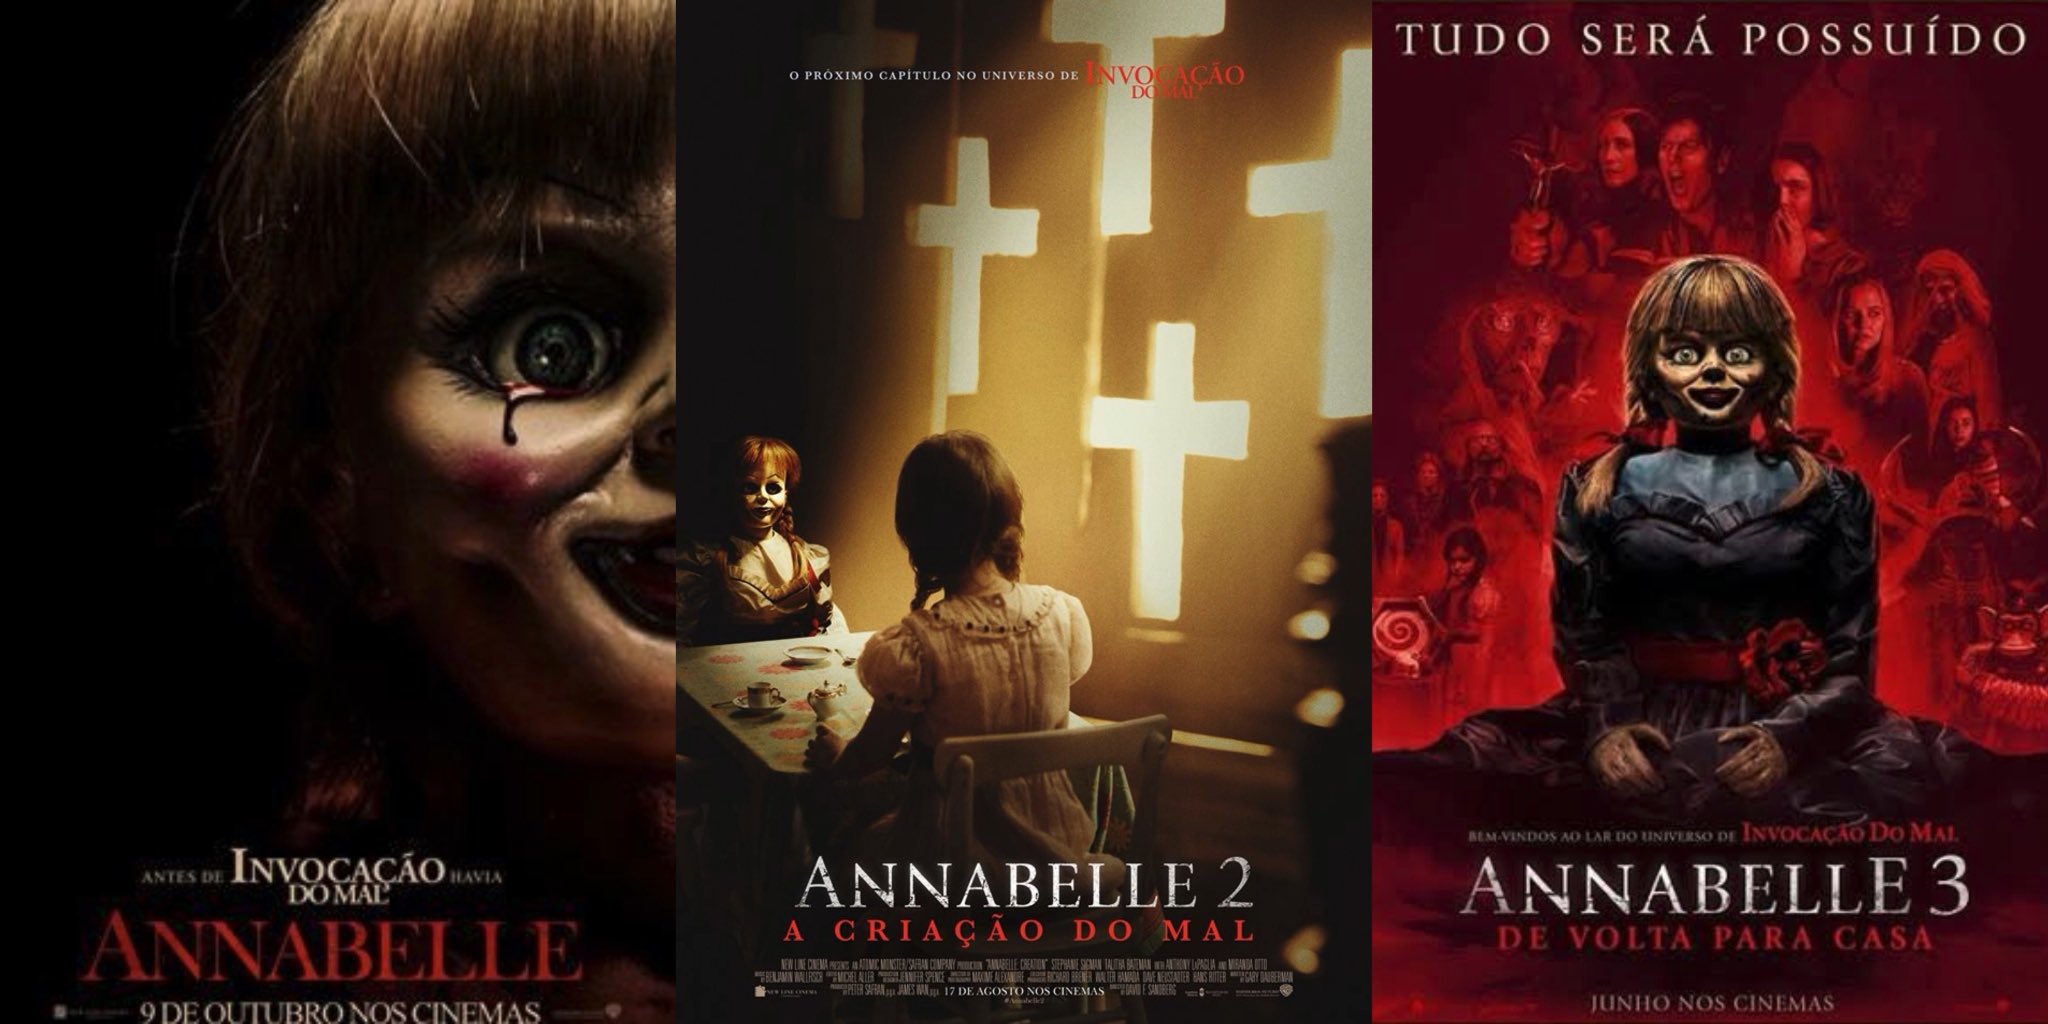 Boneca Annabelle 3 Filme De Volta Para Casa